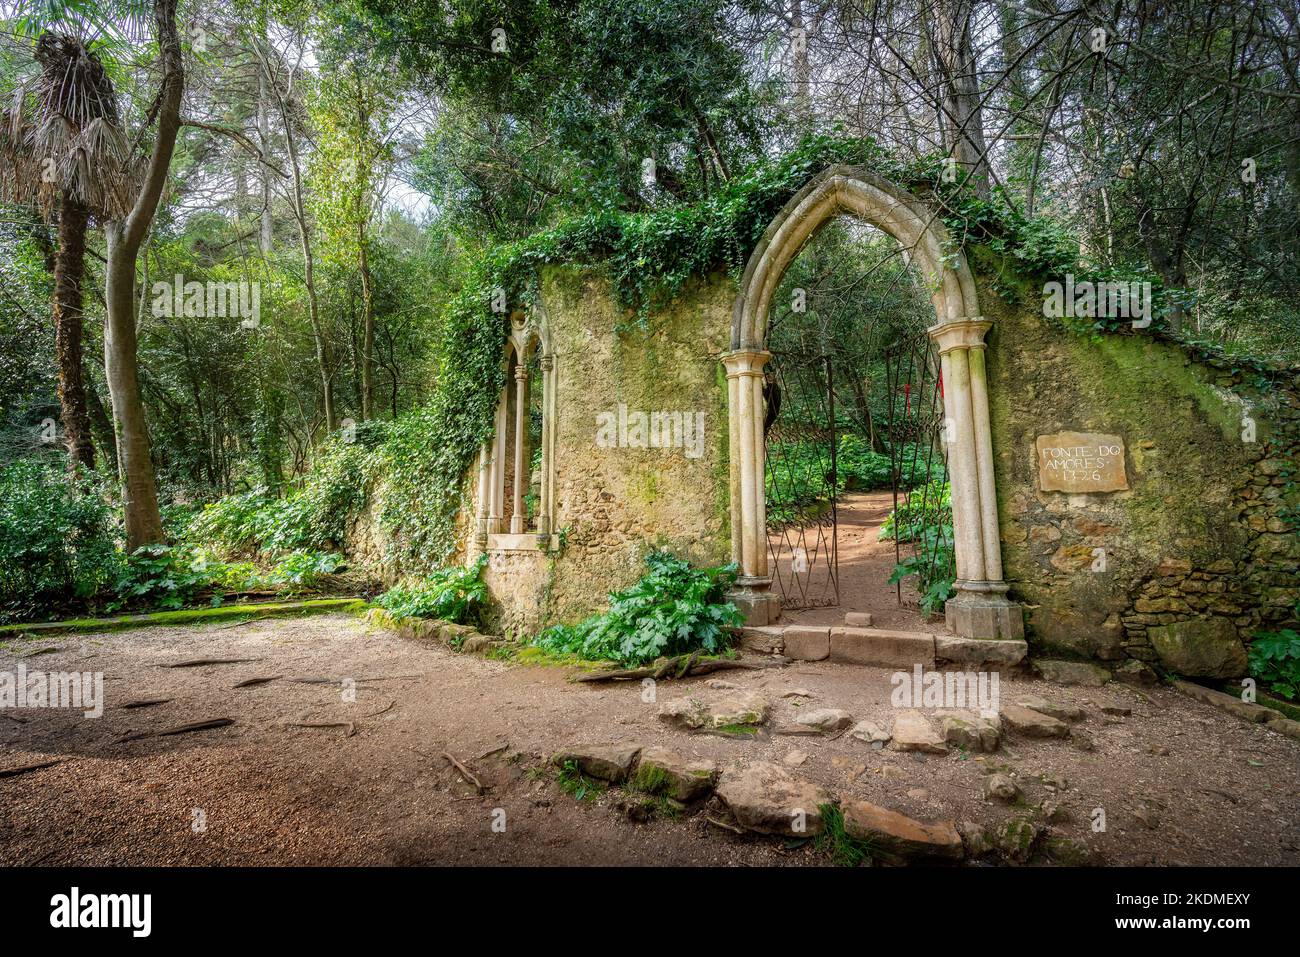 Neugotisches Portal in der Nähe von Fonte dos Amores (Brunnen der Liebe) in den Gärten von Quinta das Lagrimas - Coimbra, Portugal Stockfoto